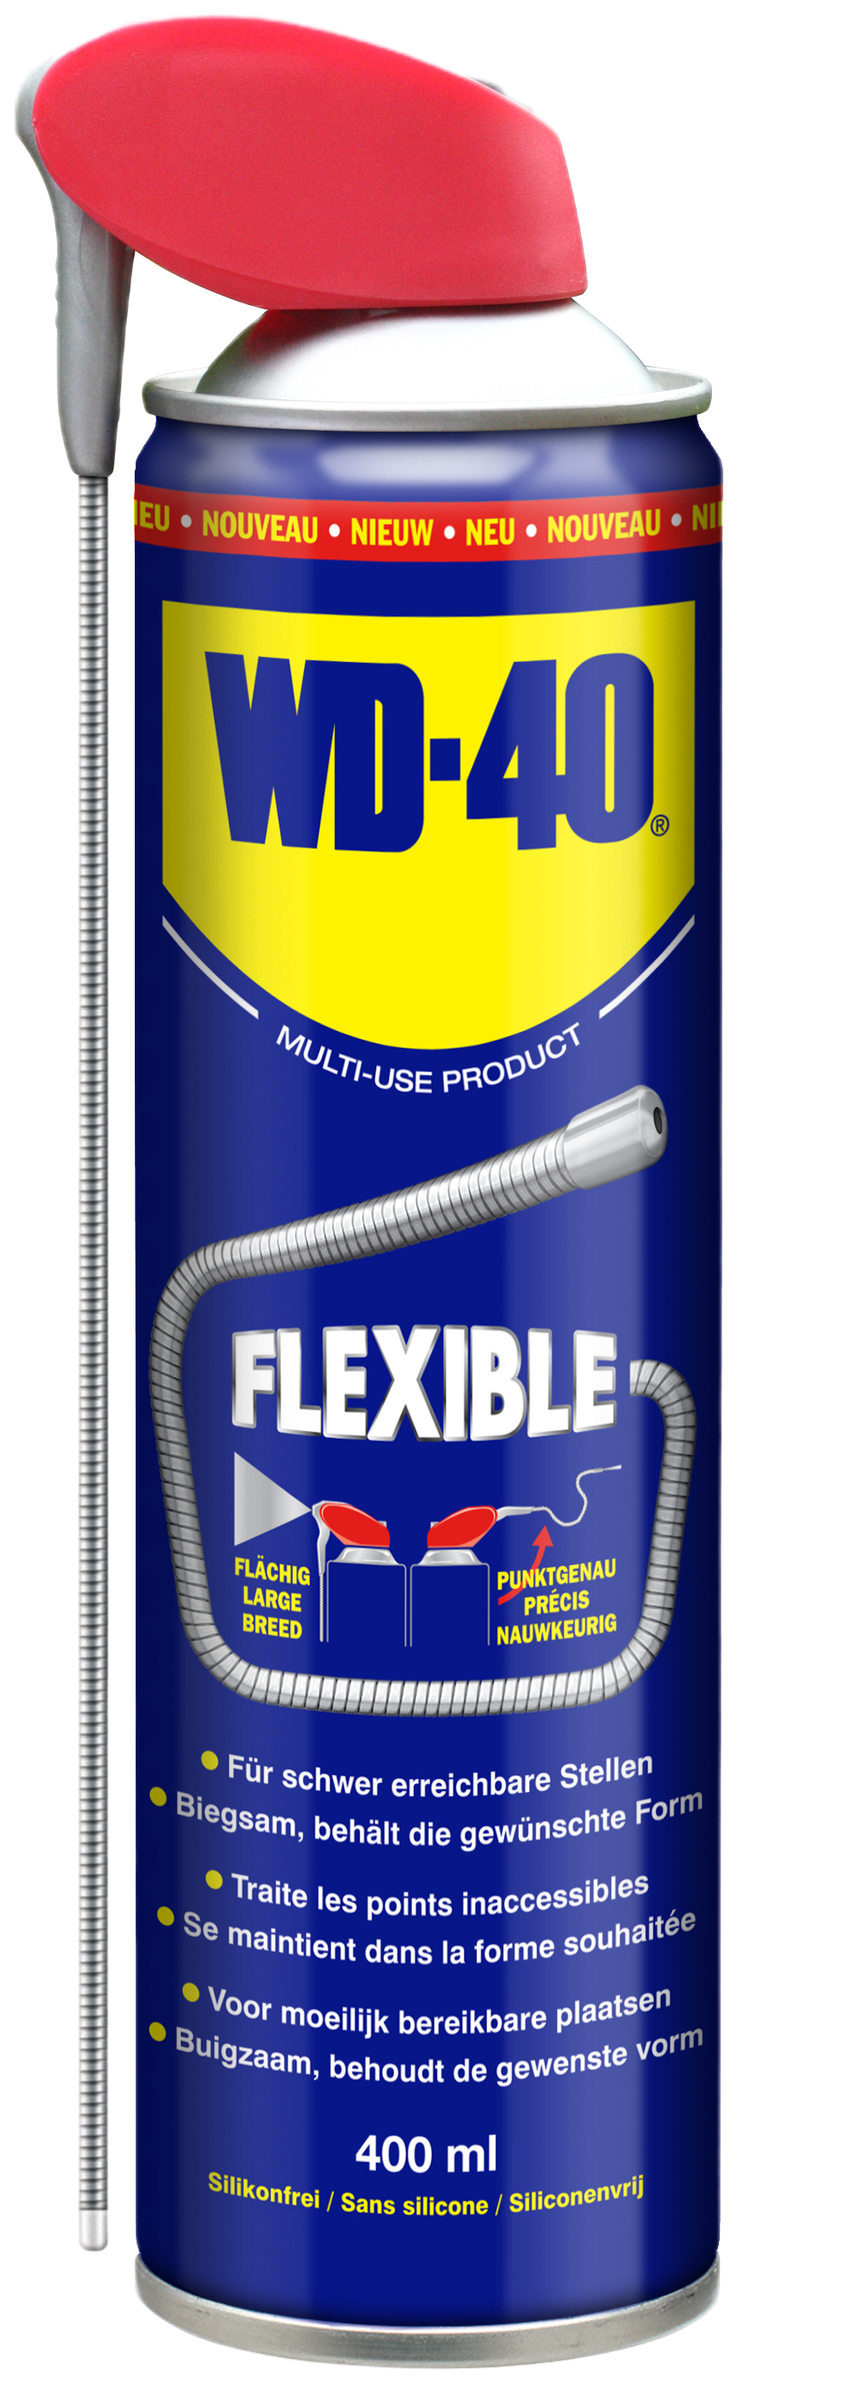 WD-40 Flexible, 400 ml detail 2